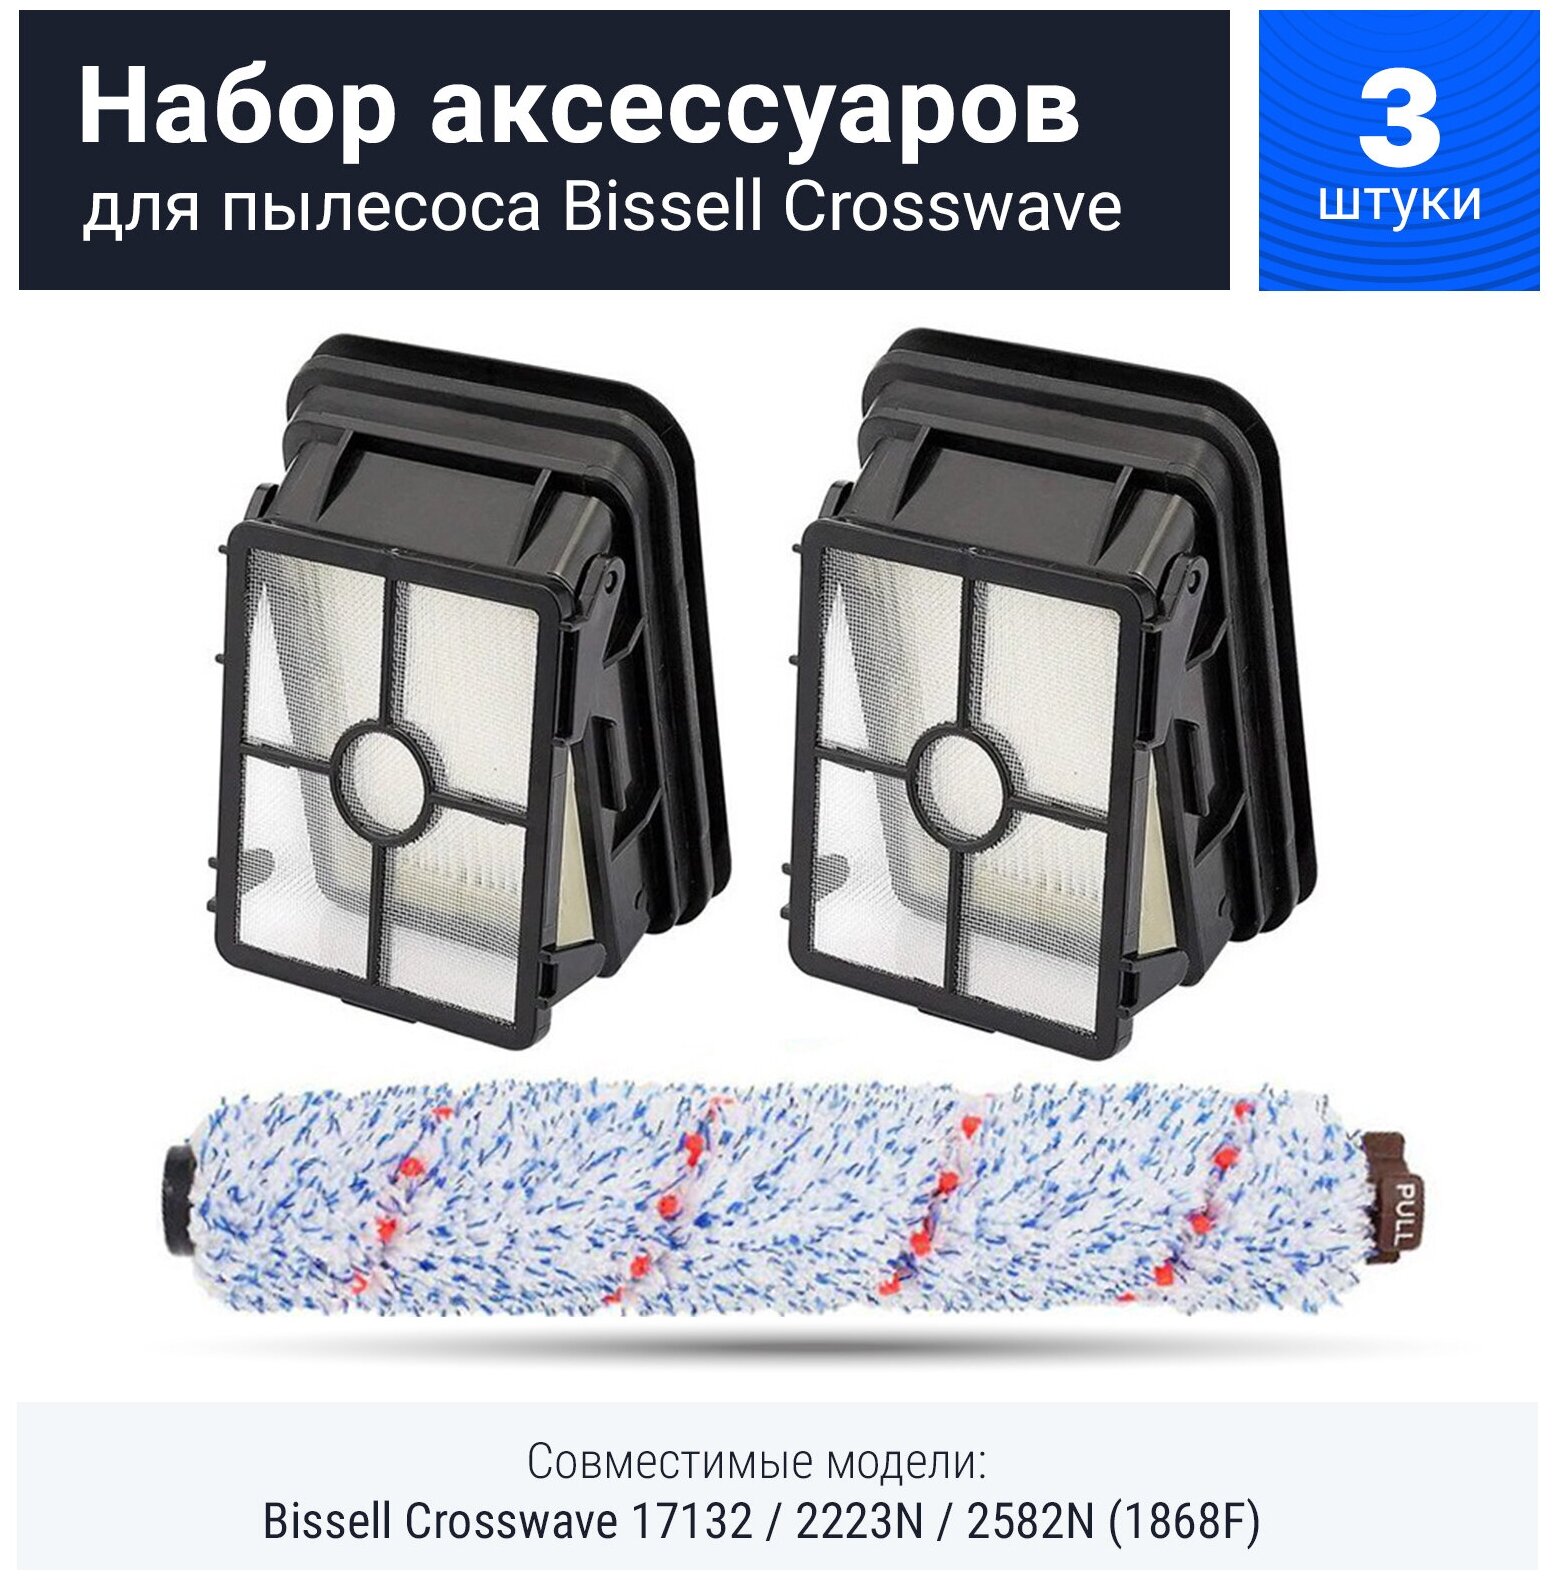 Комплект фильтров + щетка для пылесоса Bissel Crosswave 17132, 2582N (1868F)